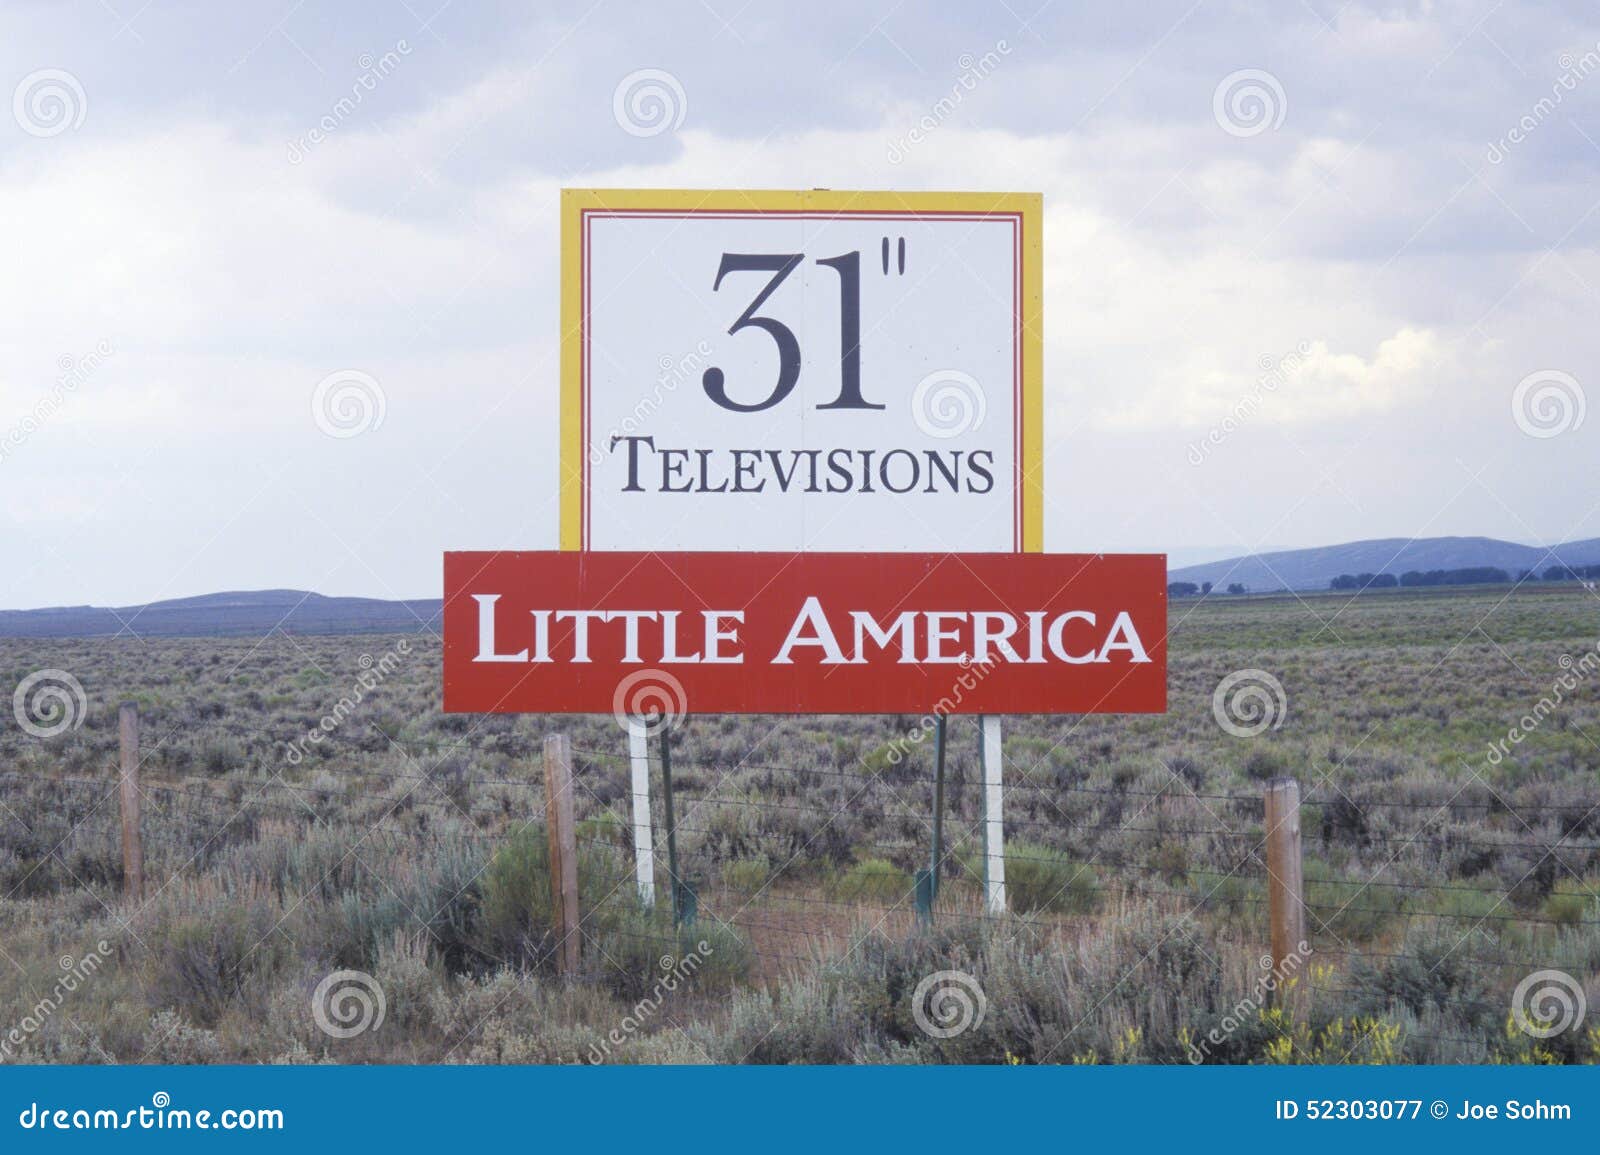 a sign that reads Ã¯Â¿Â½31Ã¯Â¿Â½ televisions - little americaÃ¯Â¿Â½